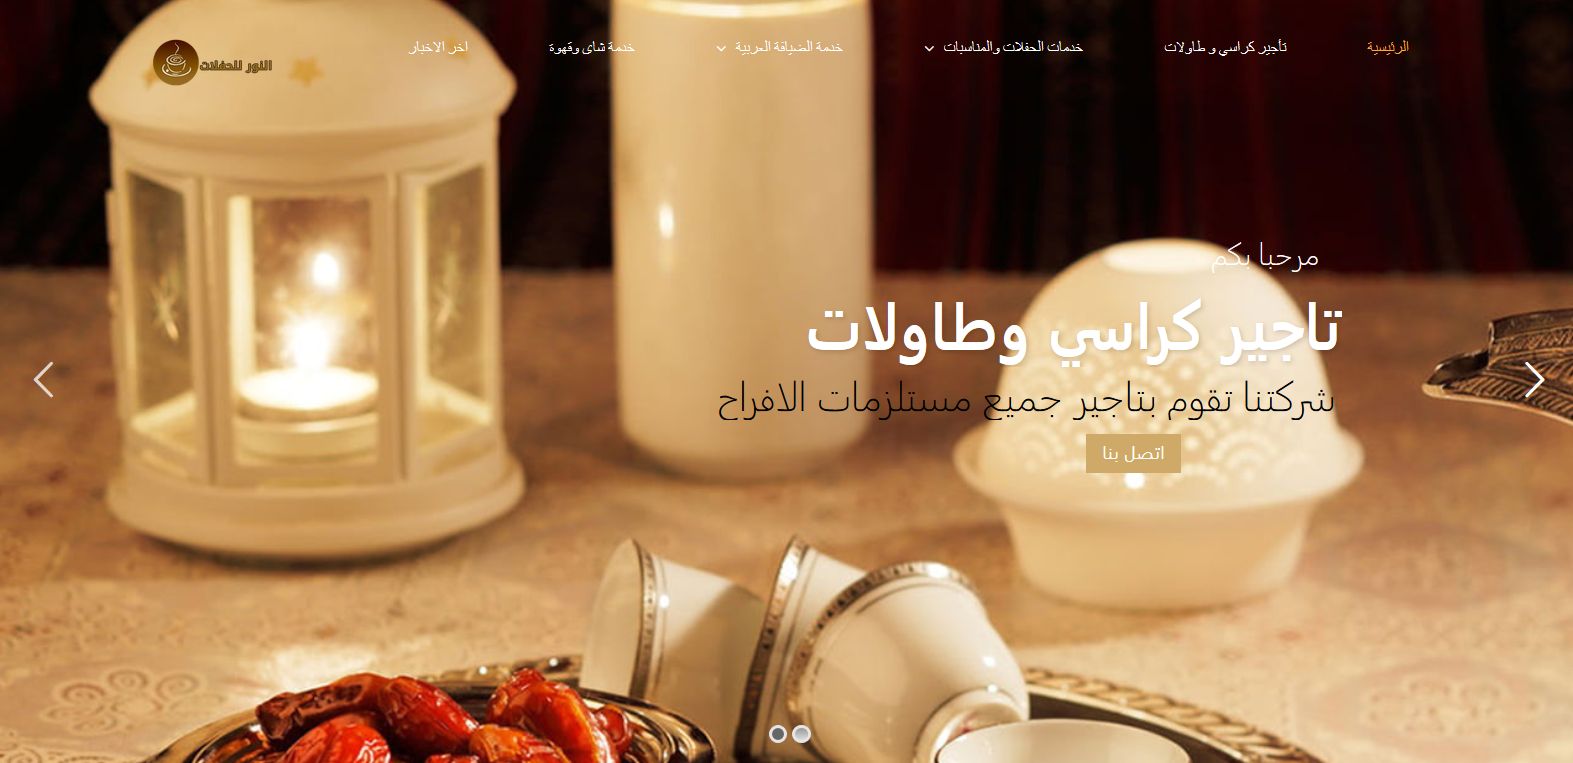 تصميم موقع خدمات الضيافة العربية بالكويت | النور للحفلات